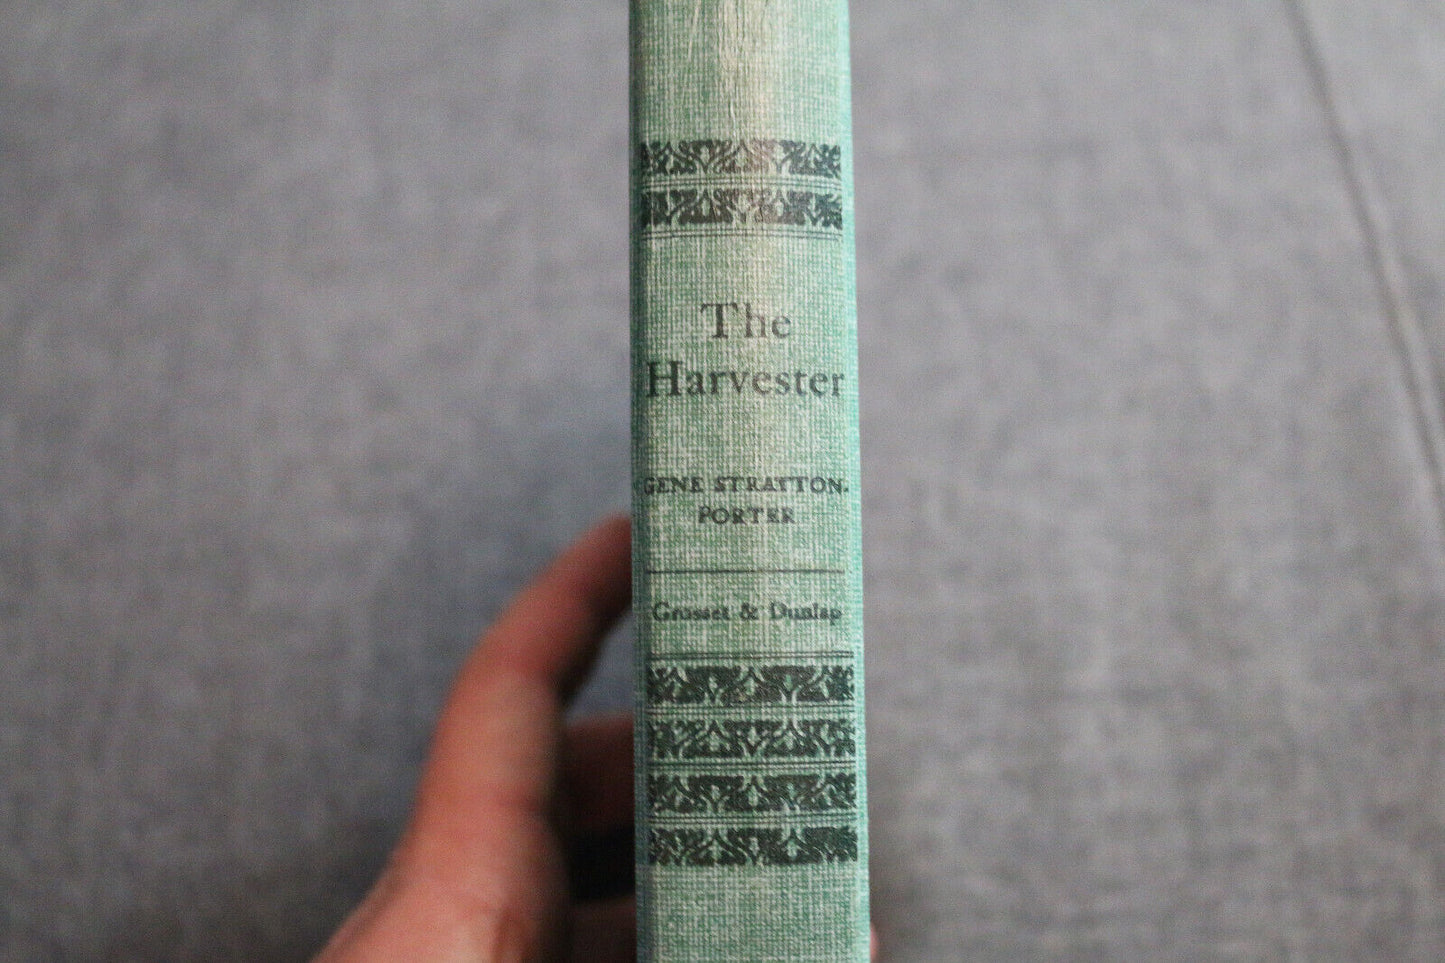 The Harvester Gene Stratton-Porter Grosset & Dunlap Vintage Book Antique Hc